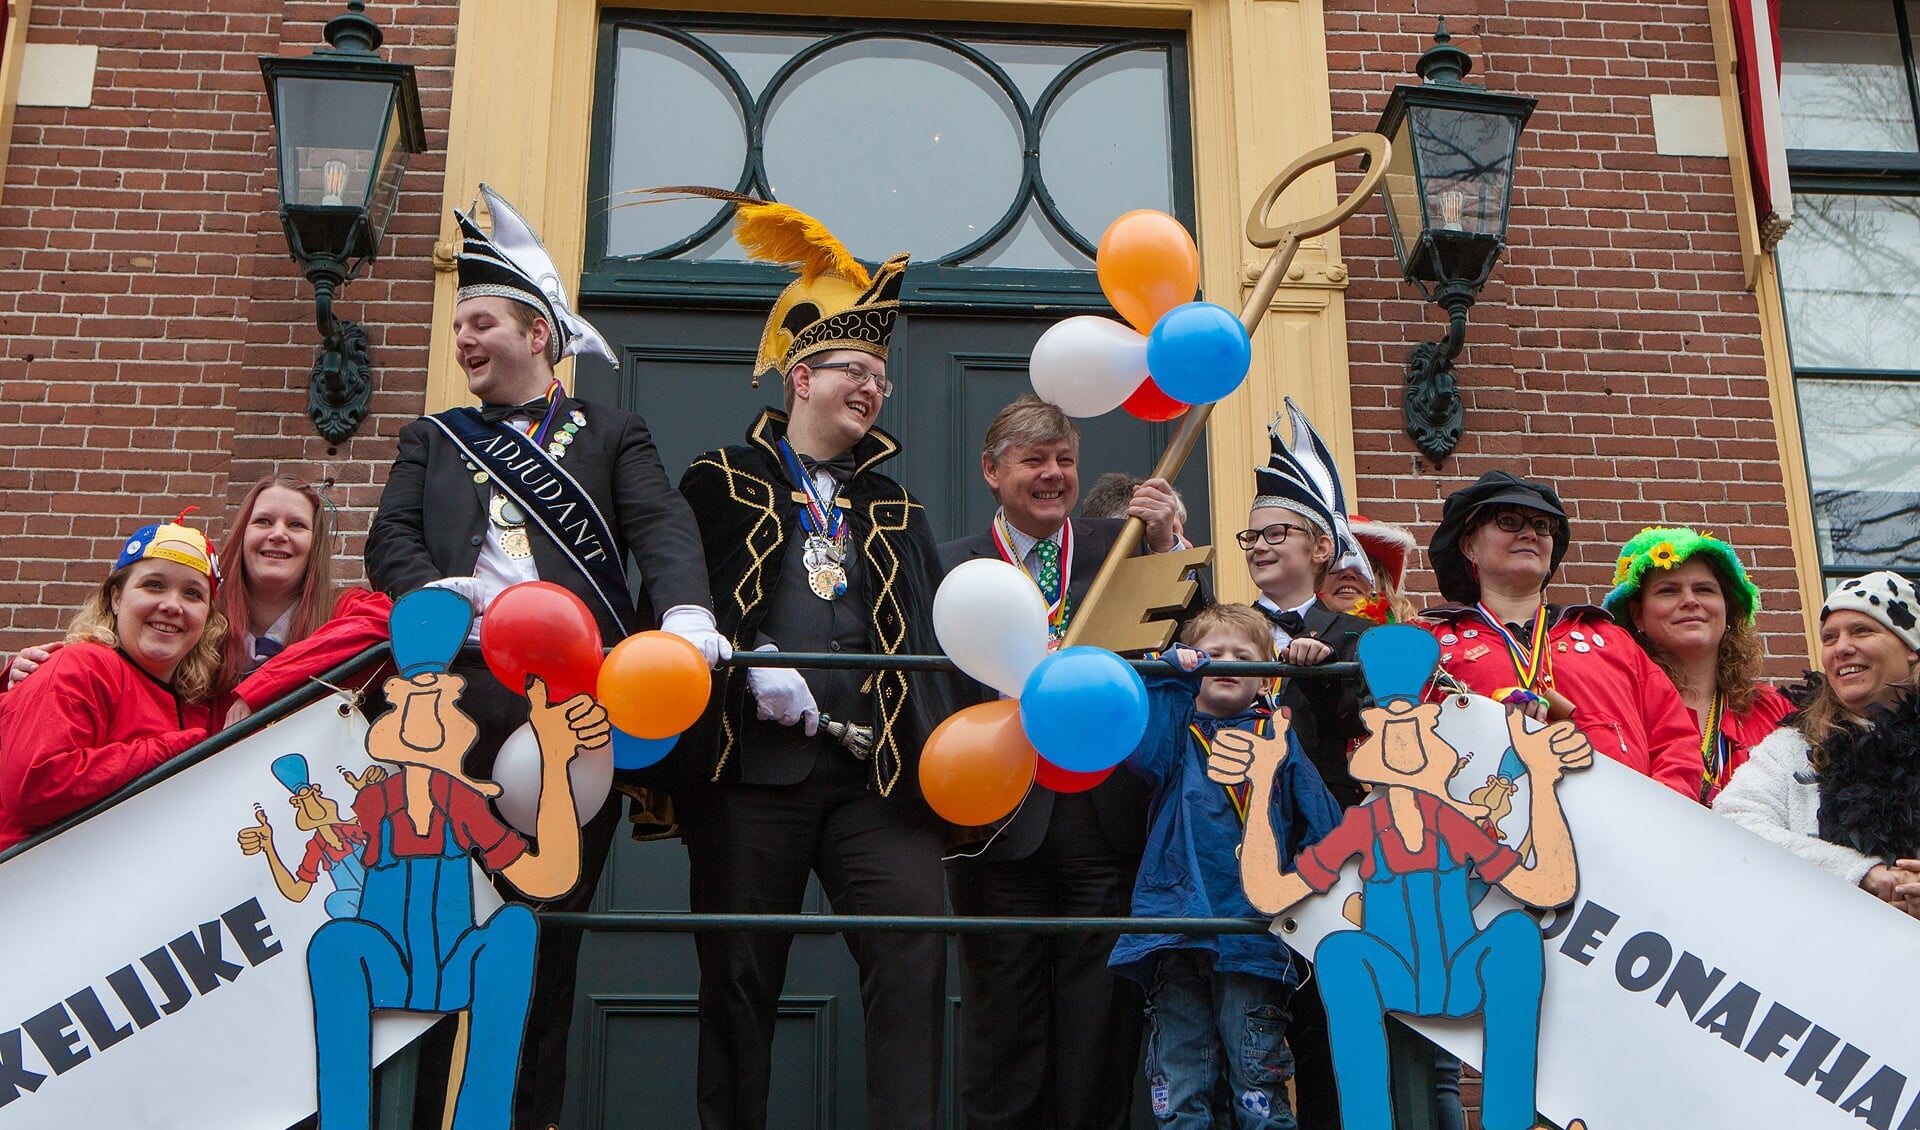 De sleutel van Laerendonck wordt traditioneel door burgemeester Elbert Roest aan De Onafhankelijke overhandigd.